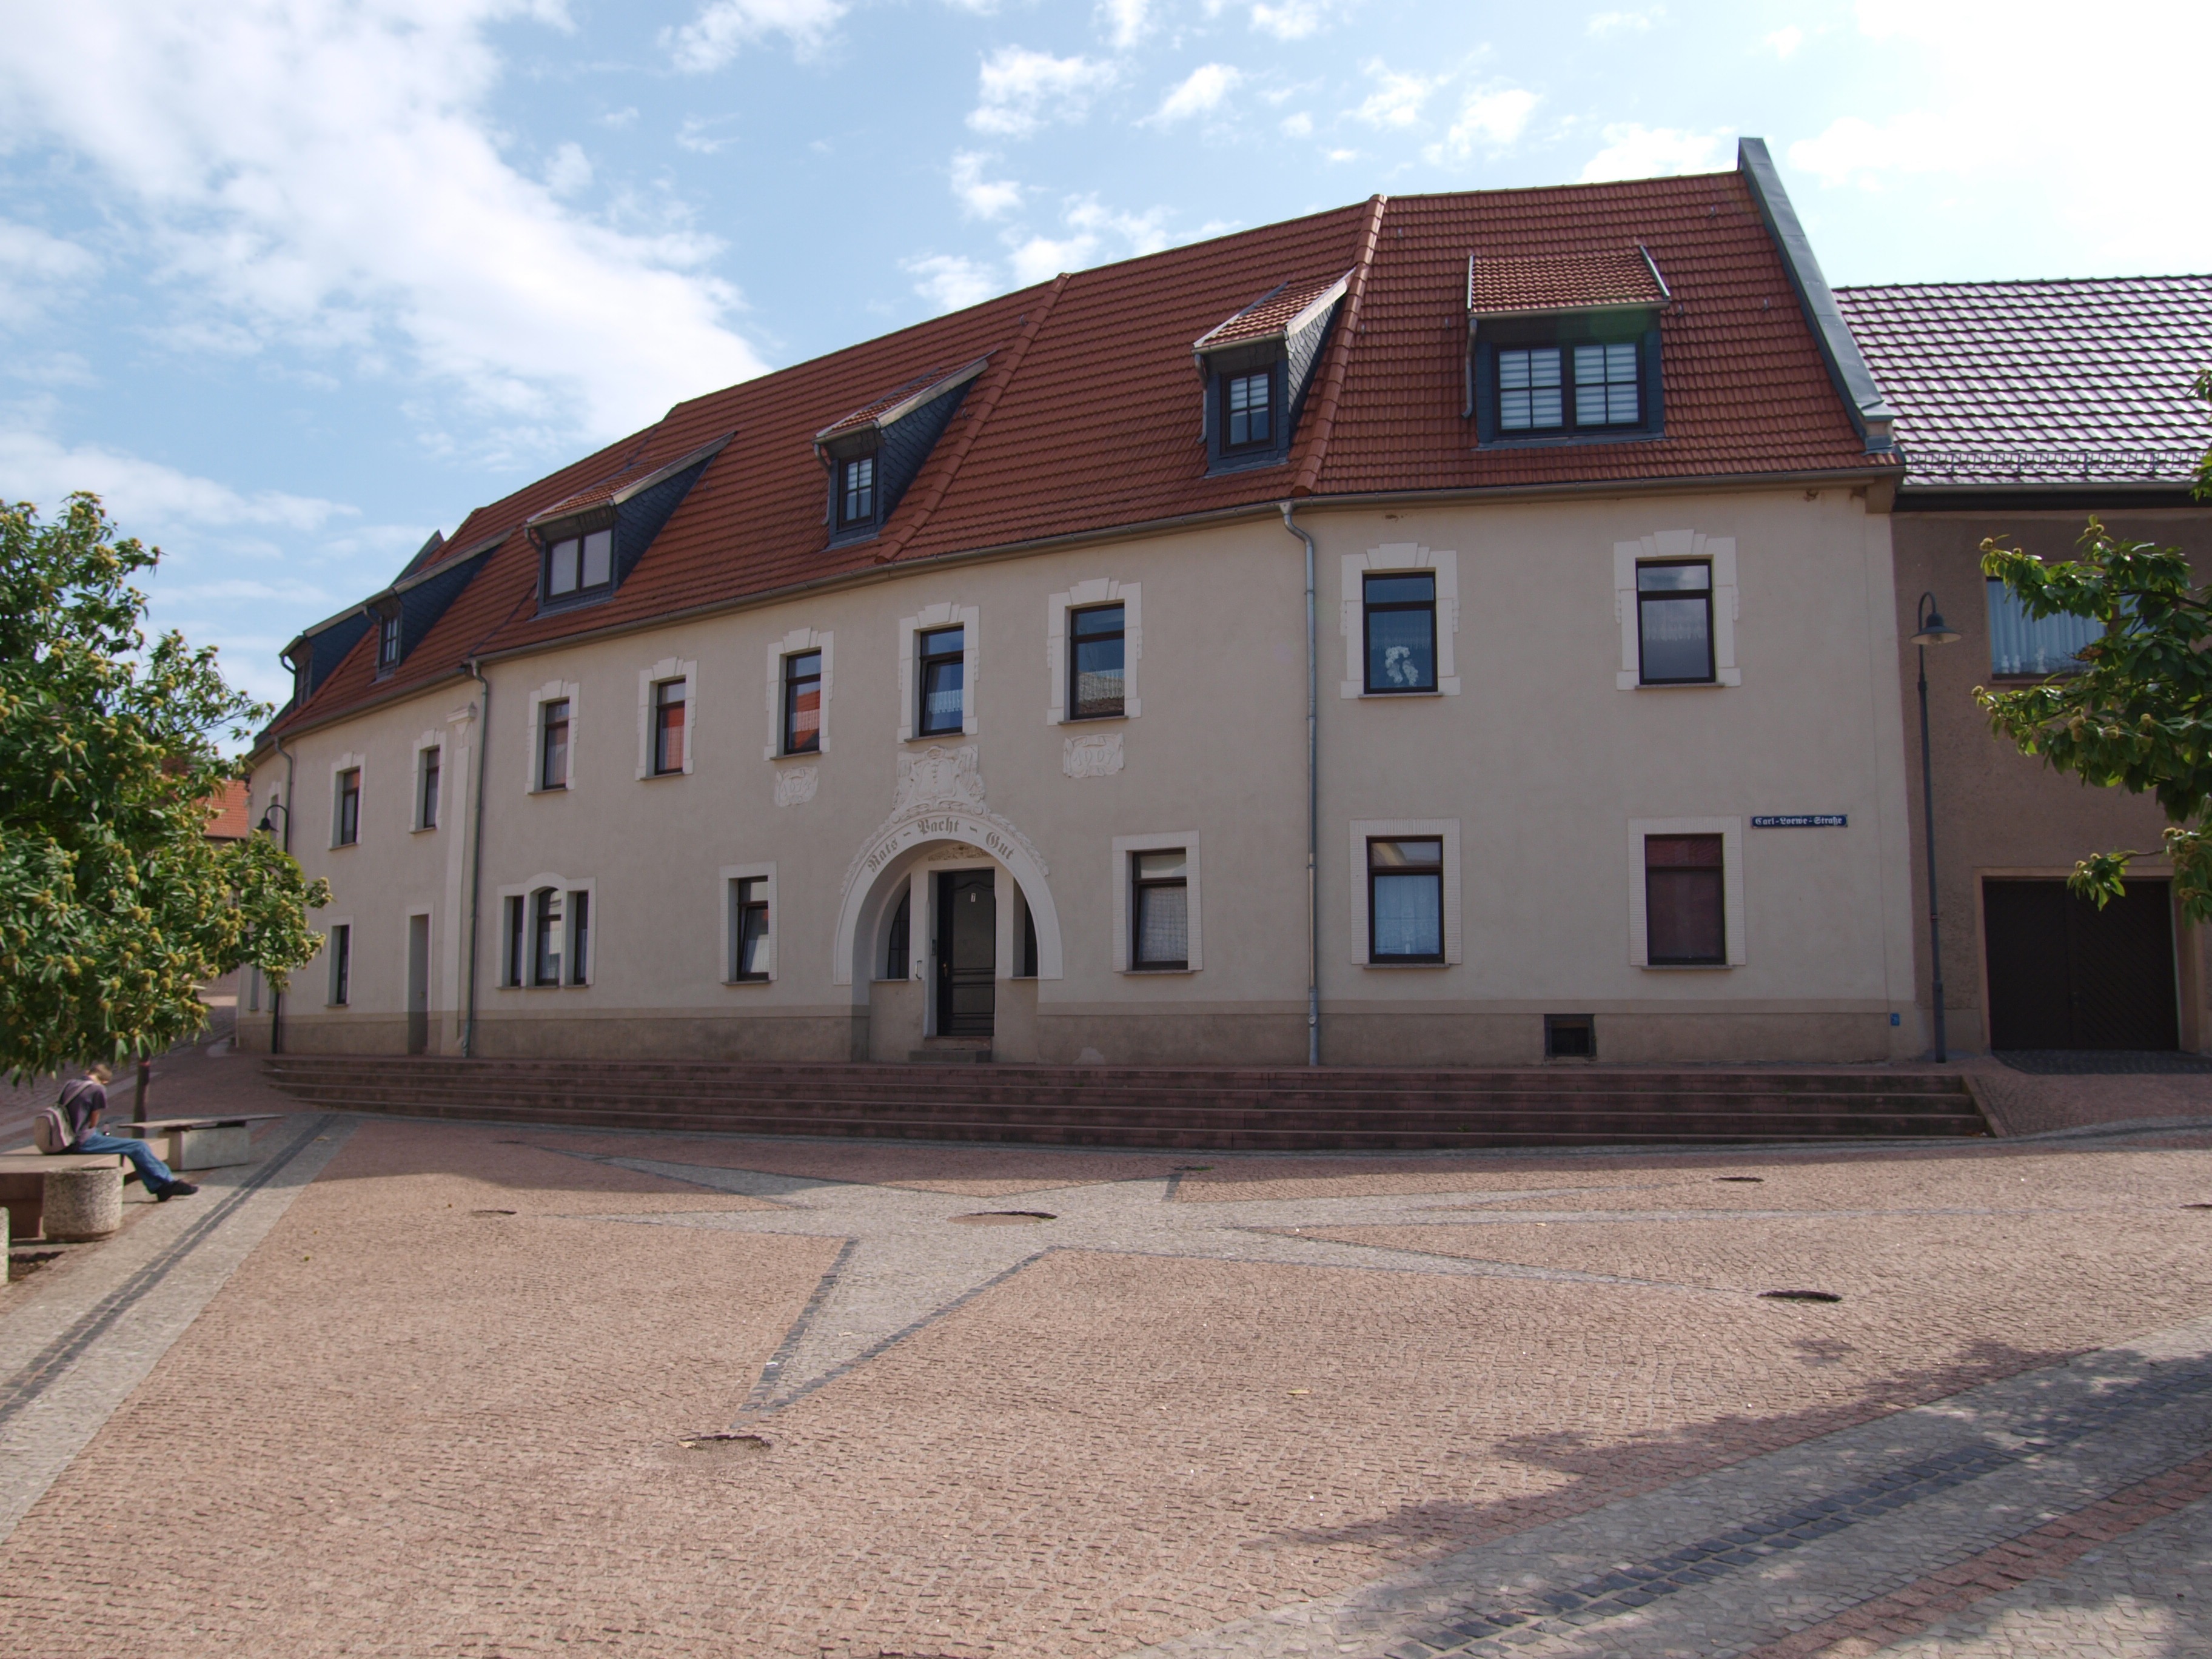 1556 Mehrfamilienhaus in Löbejün - Blick vom Marktplatz